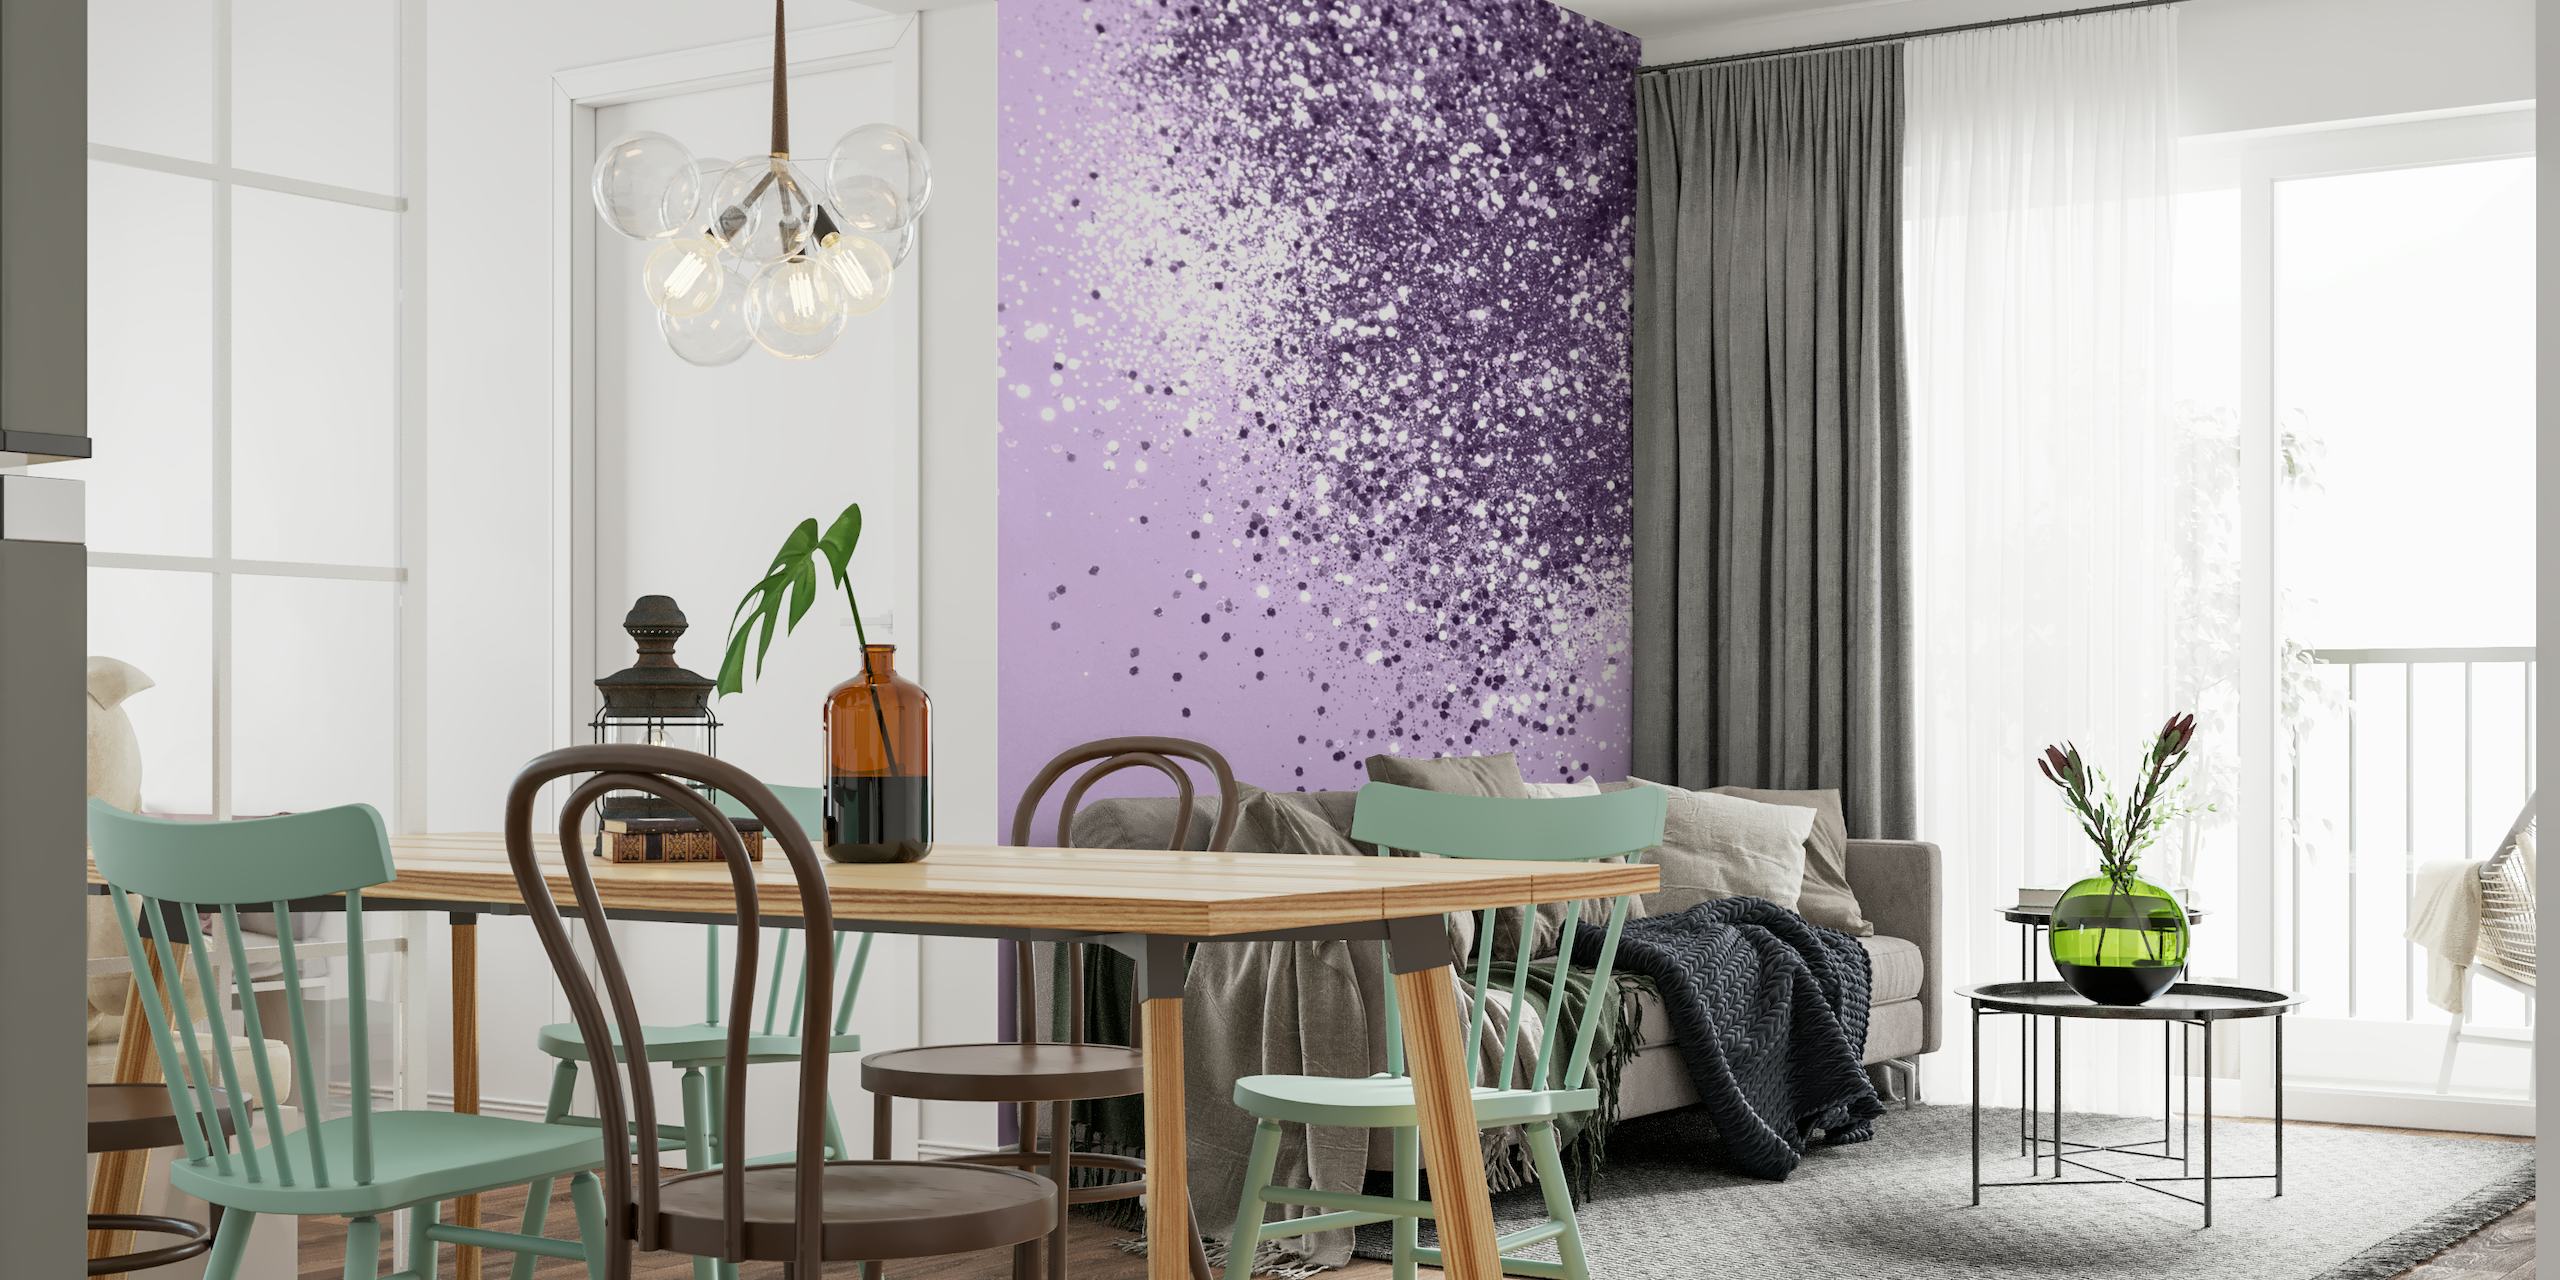 Svjetlucava zidna slika s blještavim sjajem boje lavande stvara spokojnu i elegantnu atmosferu